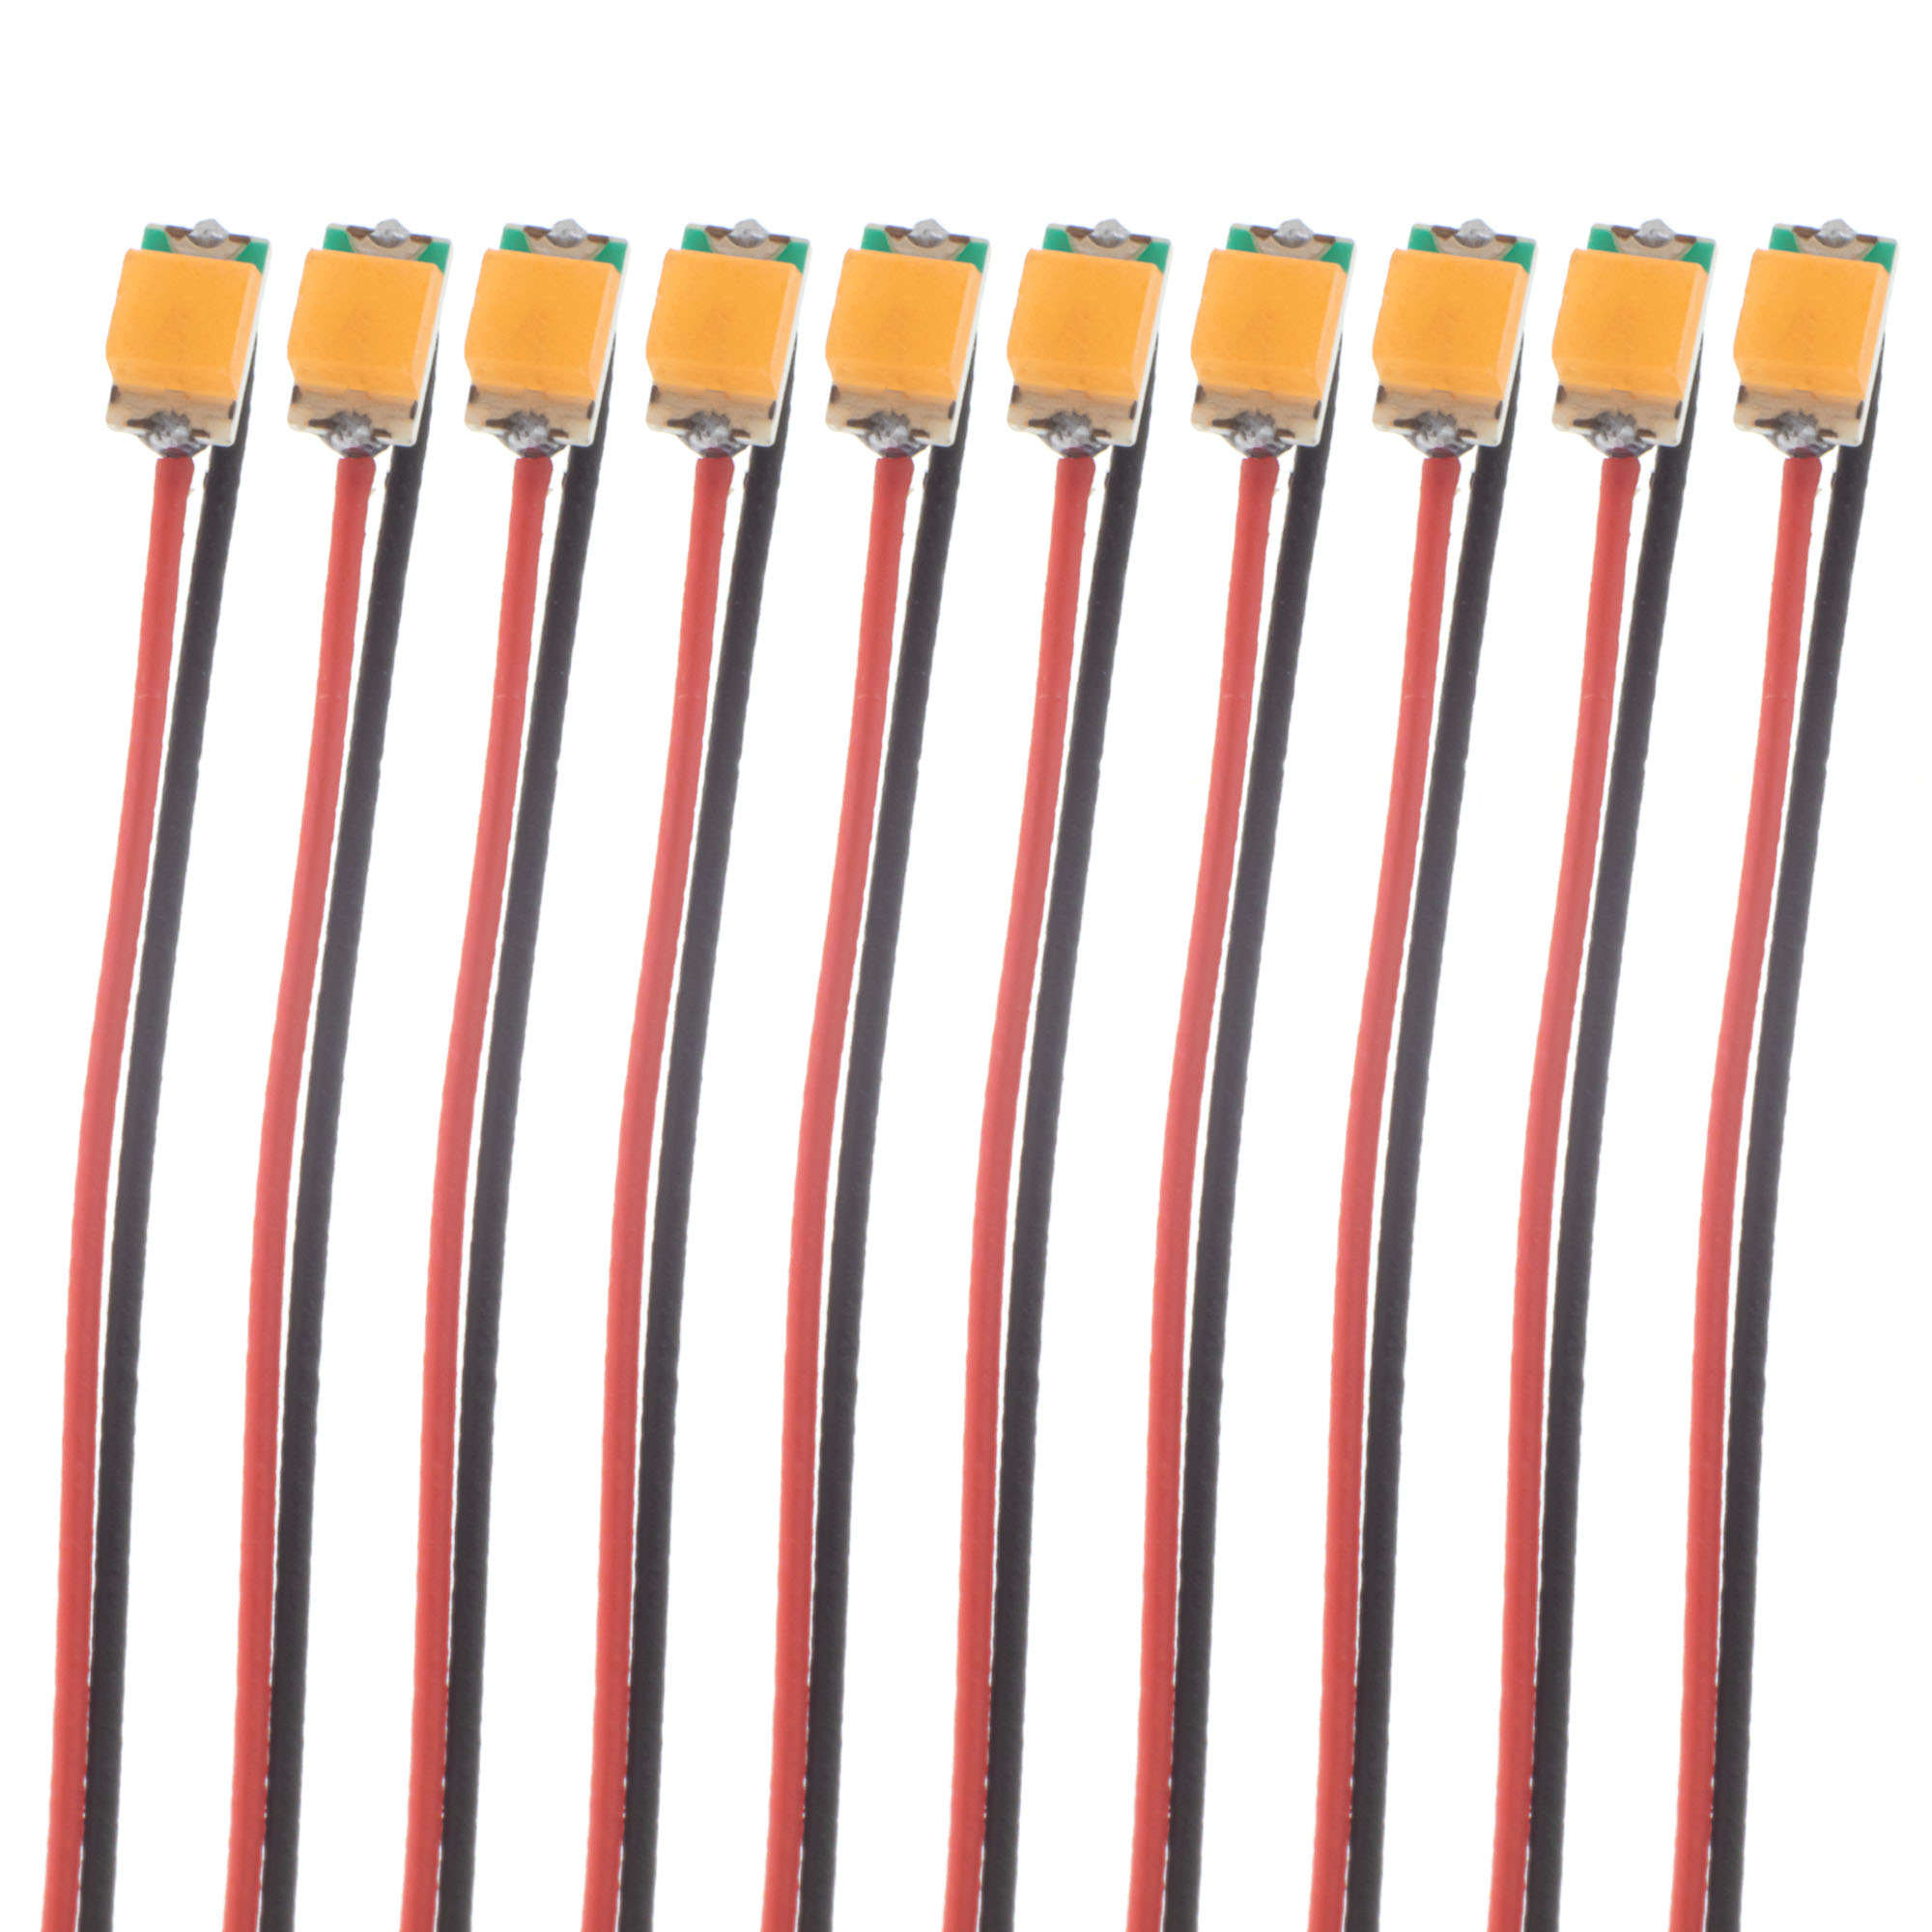 0805 SMD LED - orange - 10er Pack